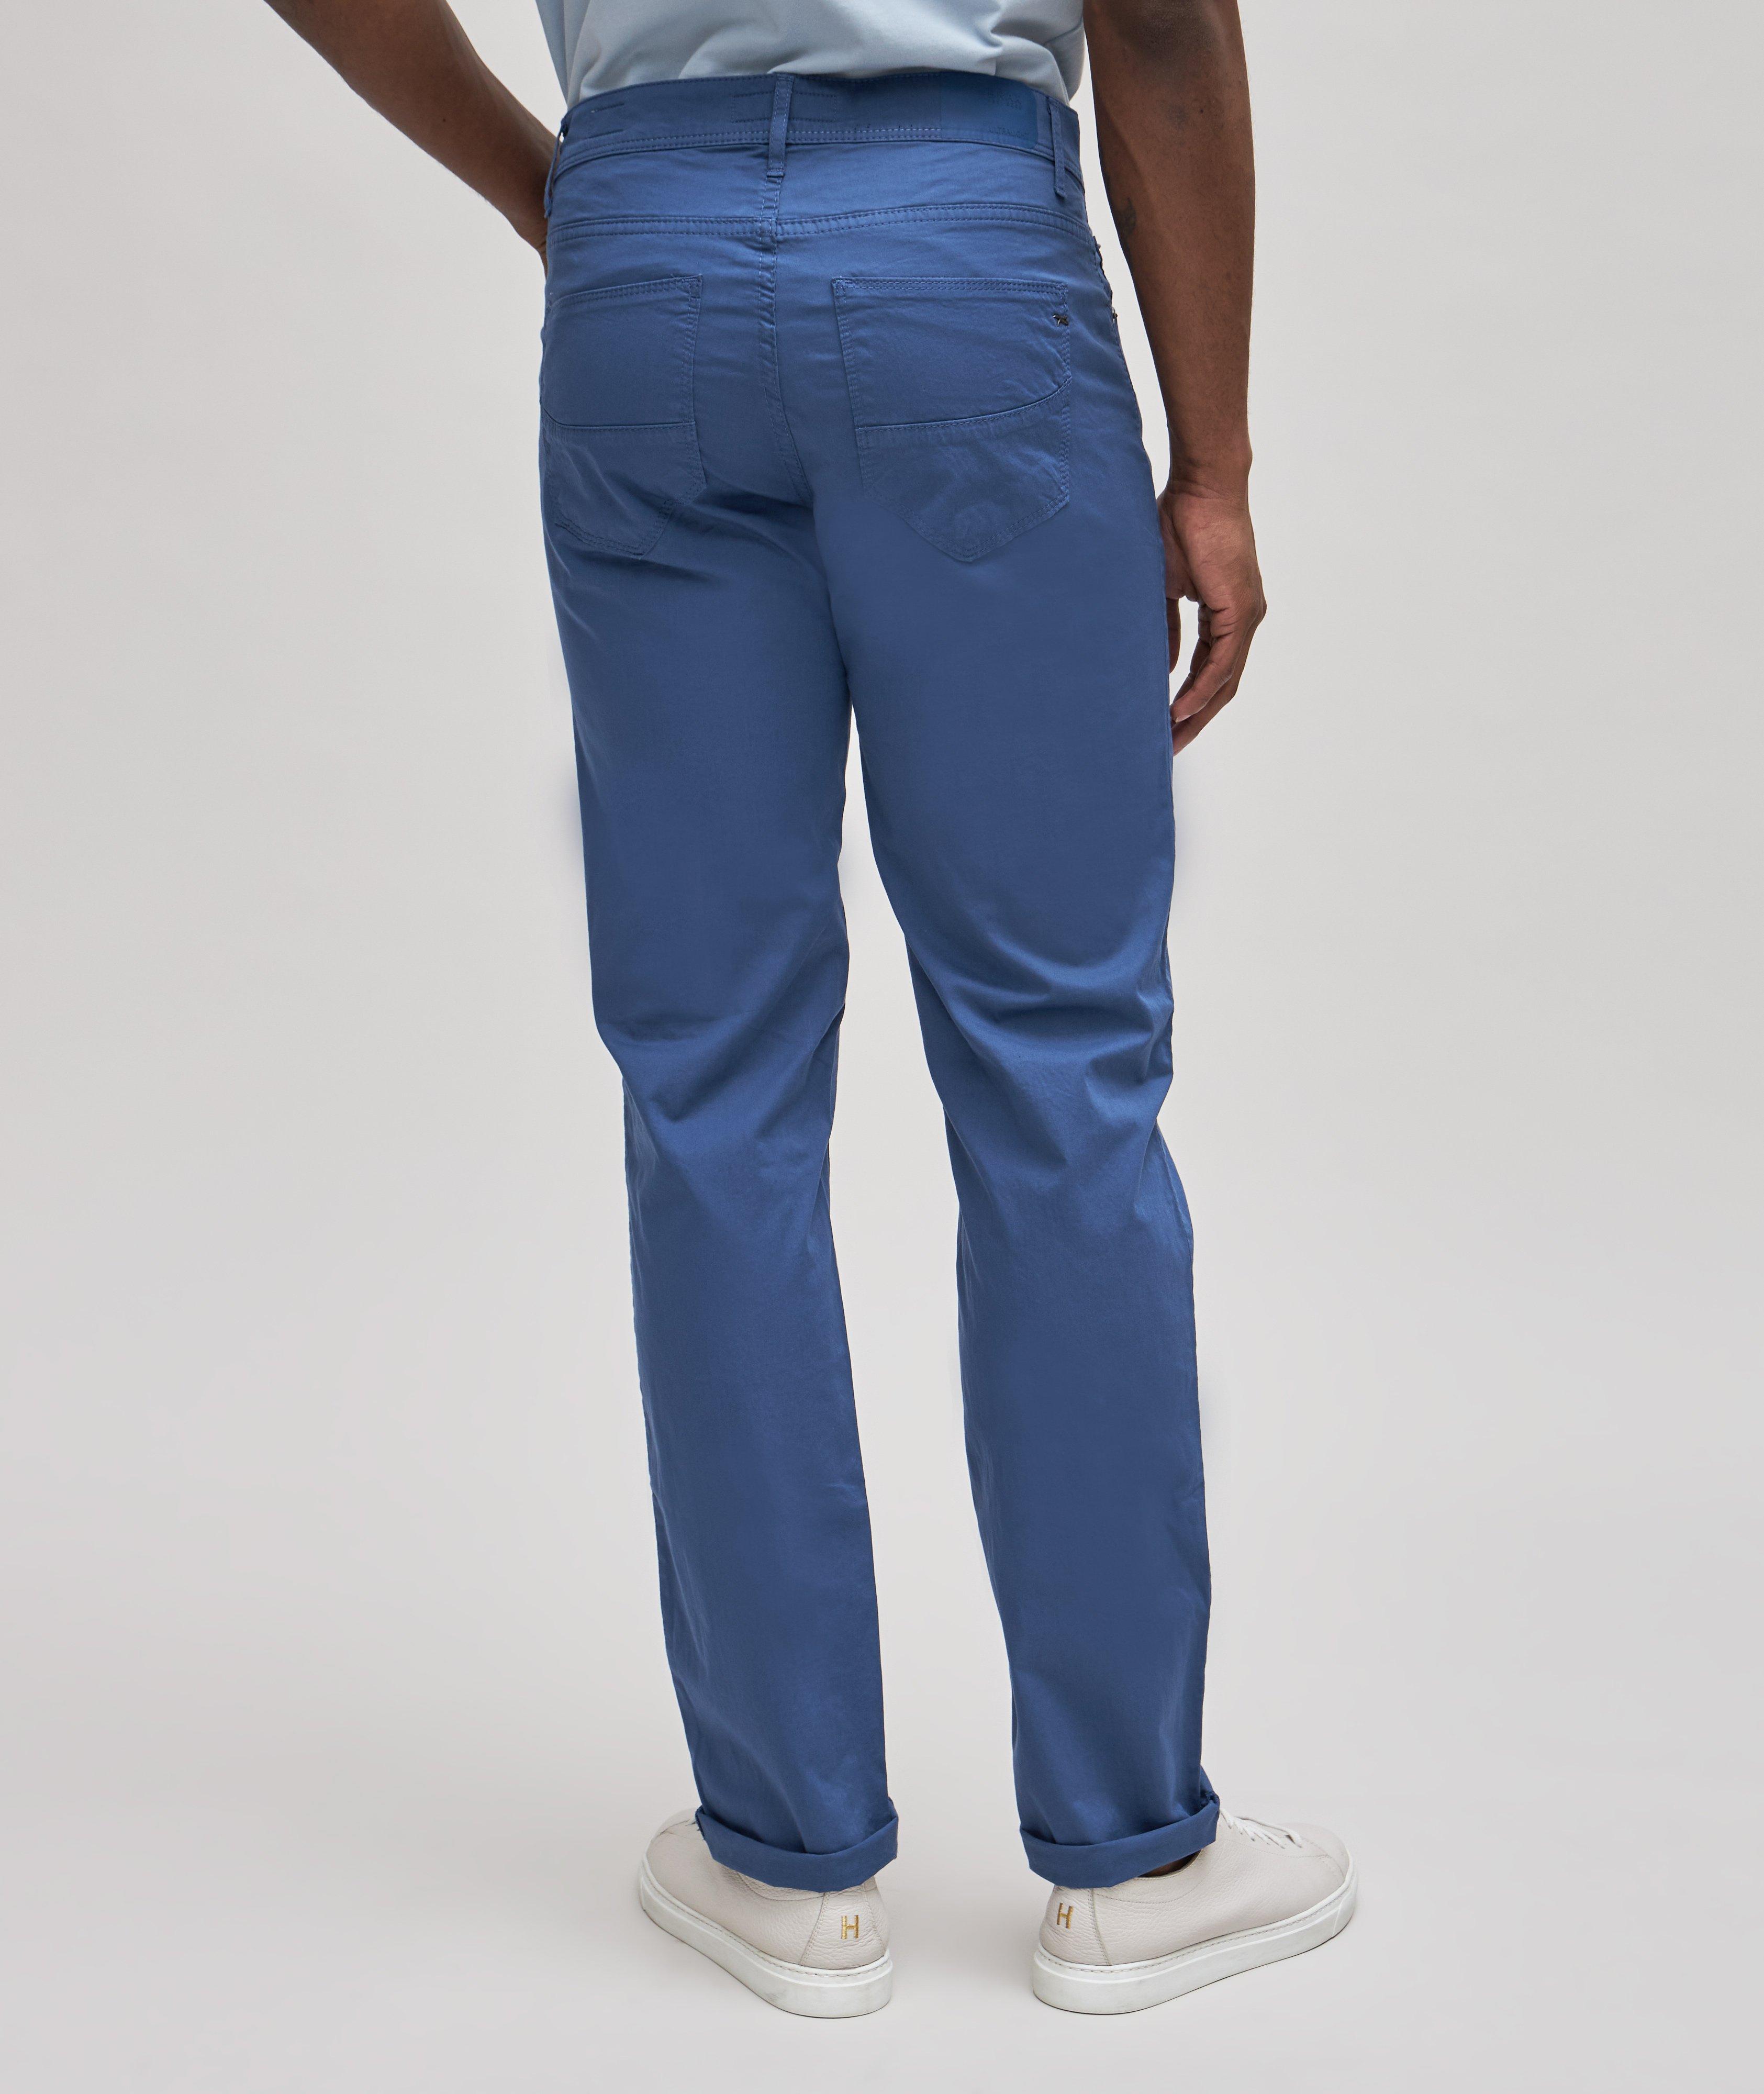 Brax Cadiz Ultralight Five-Pocket Jean | Pants | Final Cut